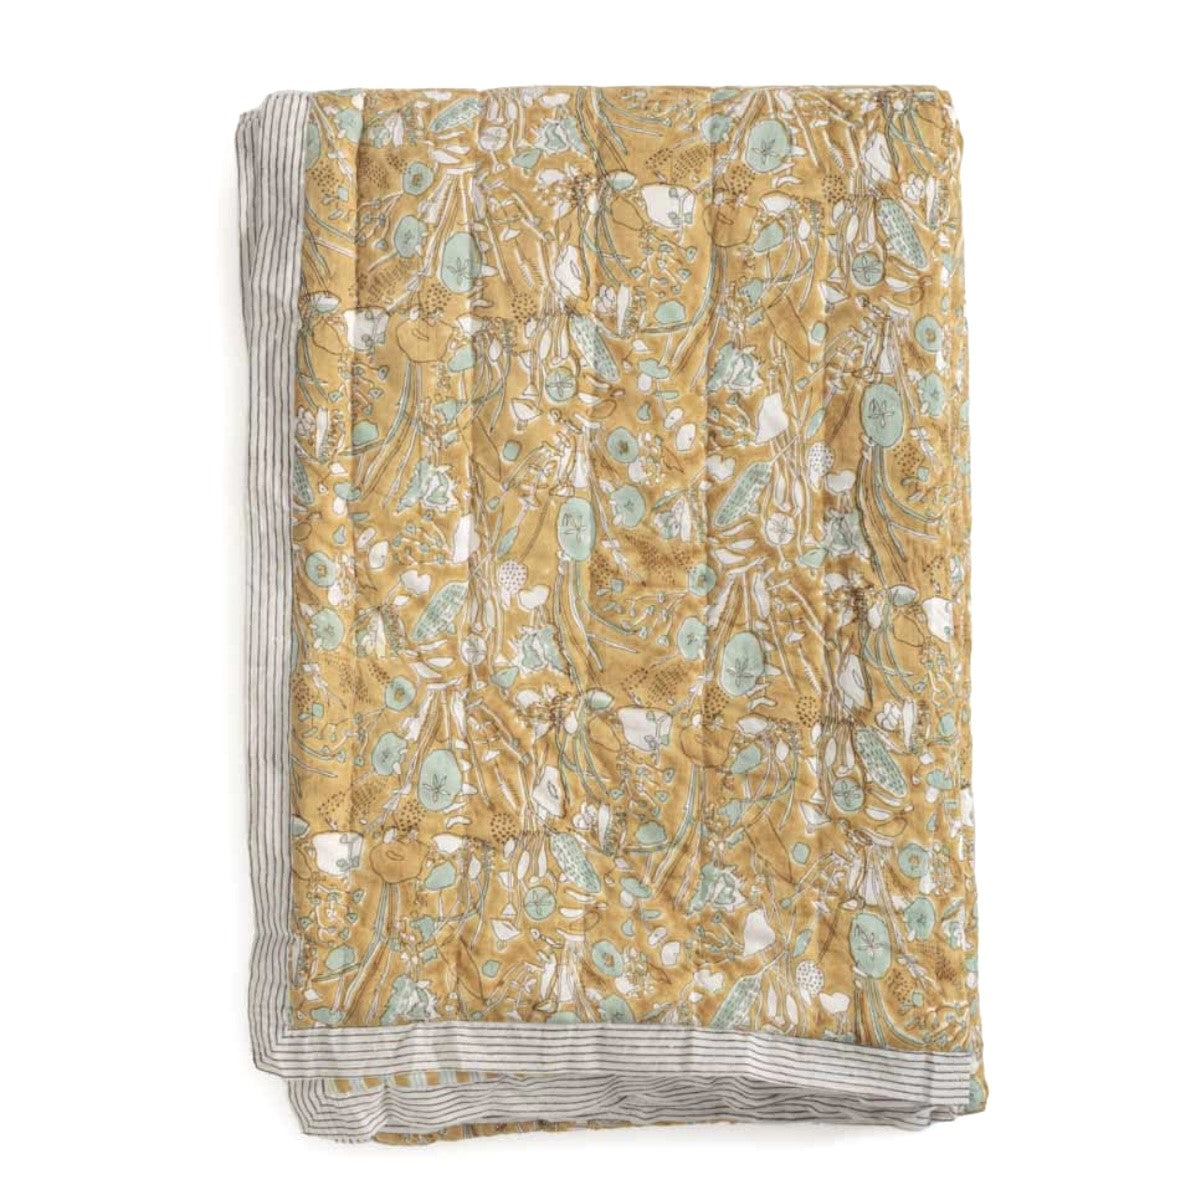 Le Monde Sauvage cotton quilt Izamal - size 2.7 x 1.7 m.